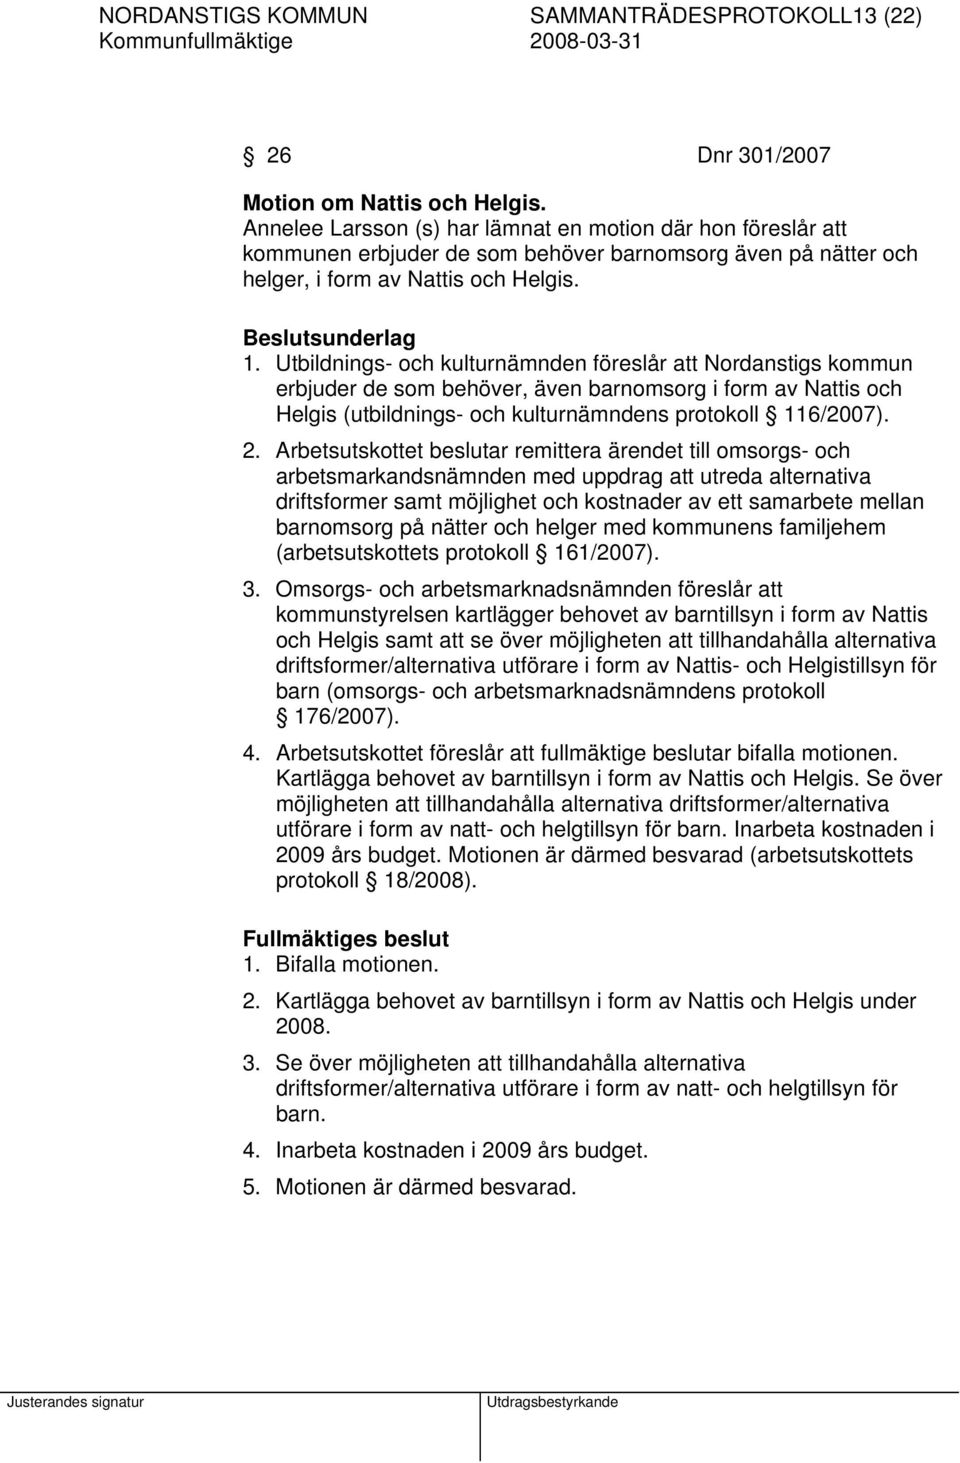 Utbildnings- och kulturnämnden föreslår att Nordanstigs kommun erbjuder de som behöver, även barnomsorg i form av Nattis och Helgis (utbildnings- och kulturnämndens protokoll 116/2007). 2.